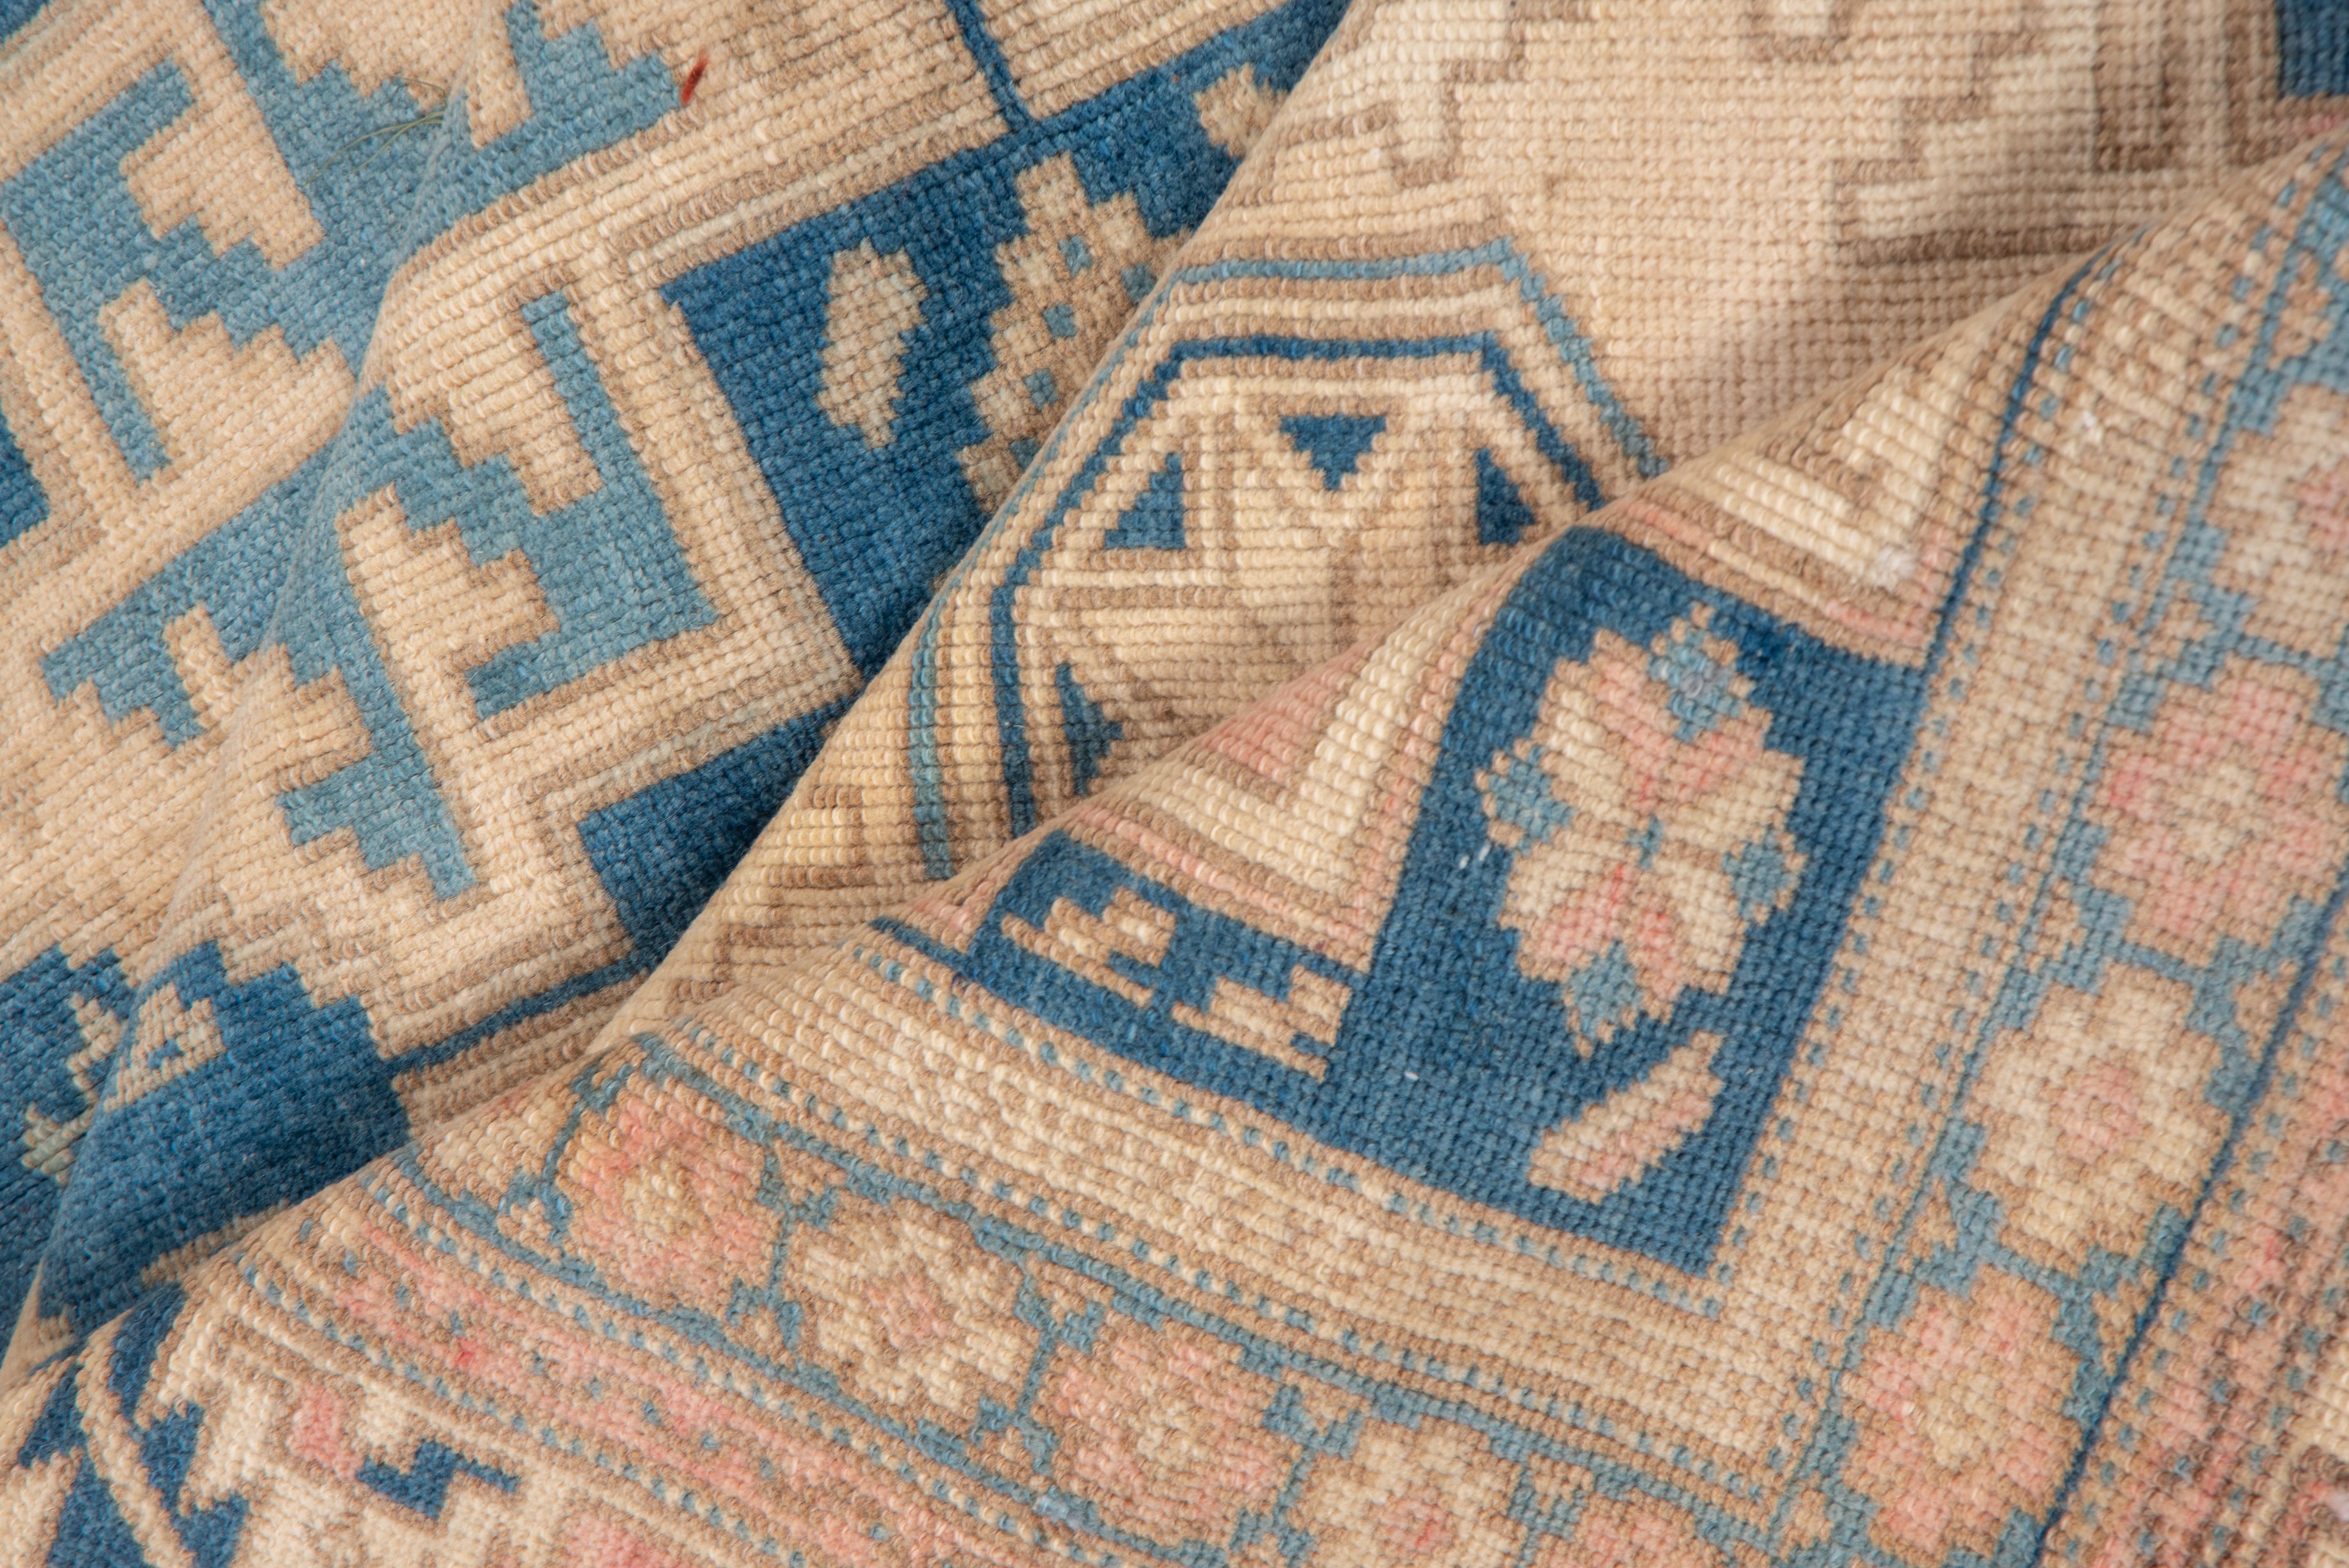 Antike Mitte des Jahrhunderts Teppich in erstaunlichen Zustand, erkundigen Sie sich mit jeder und alle Fragen.